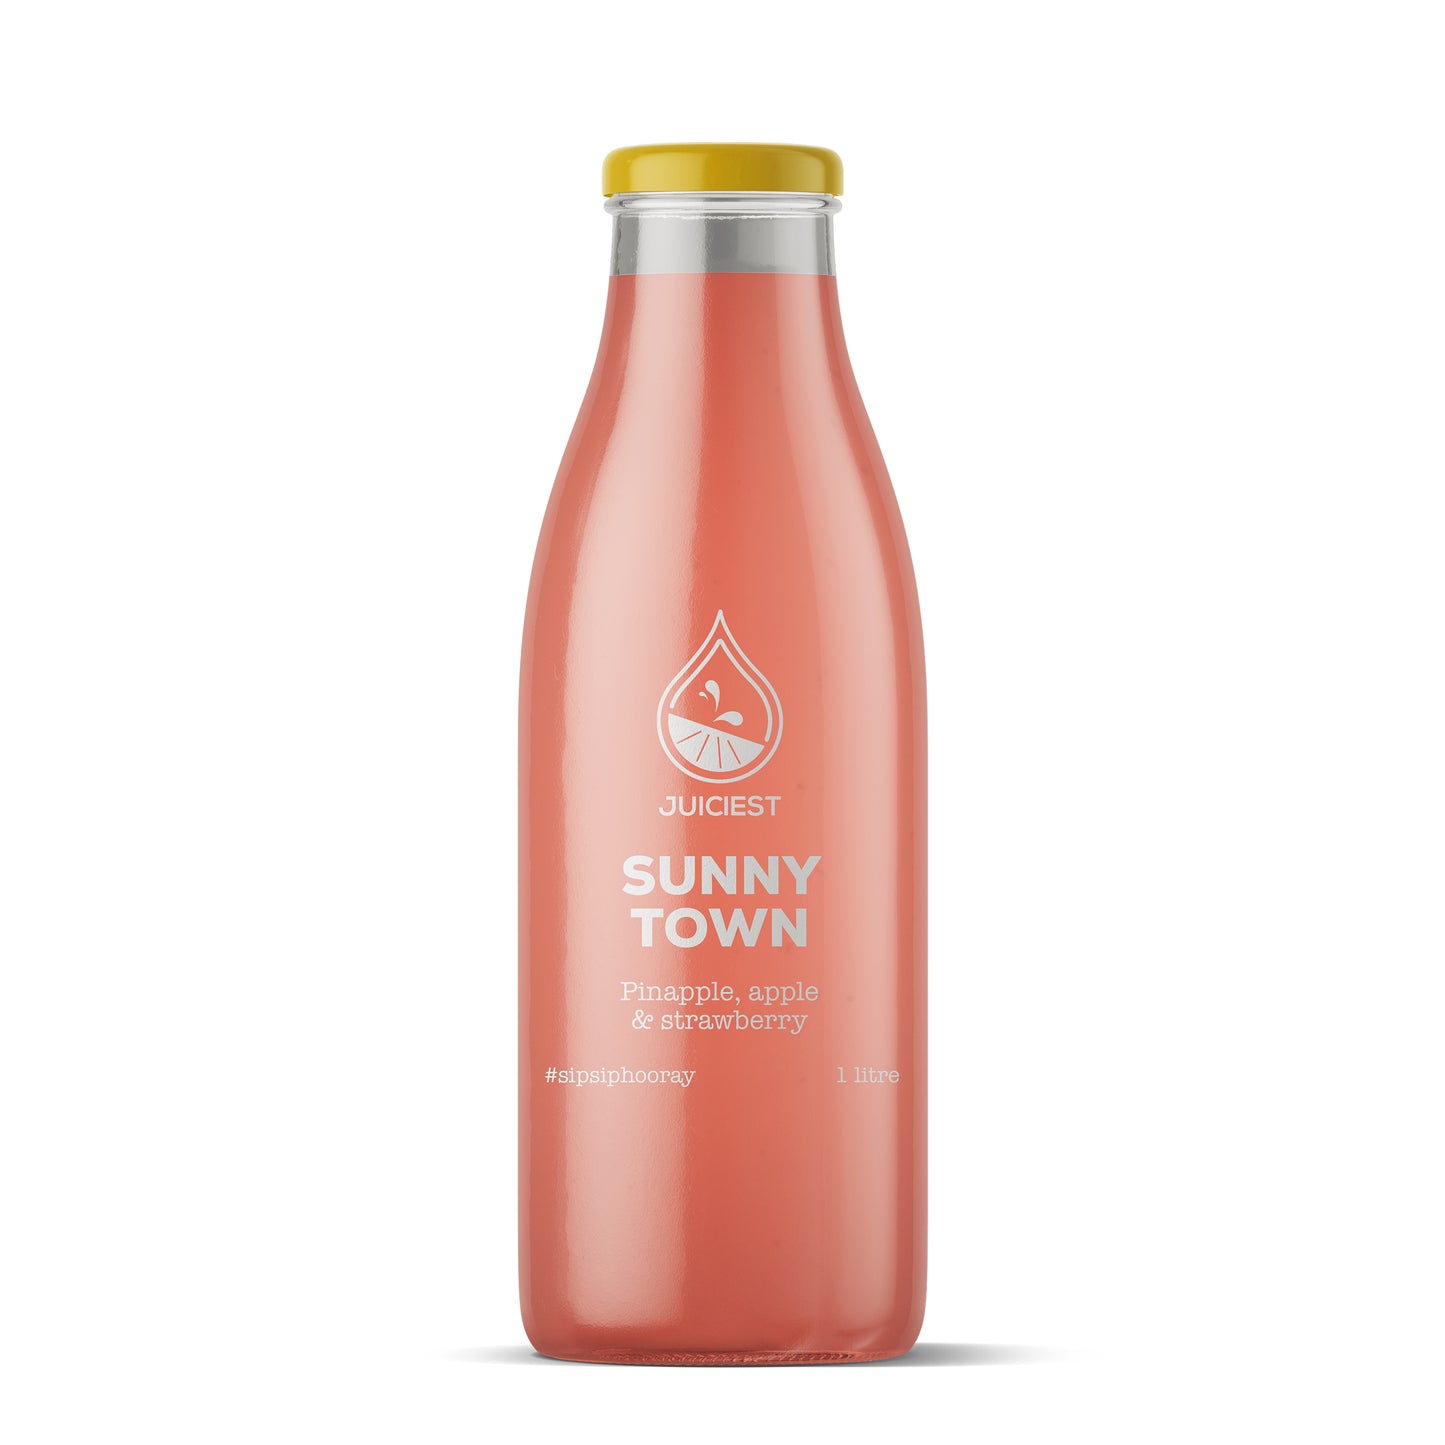 Juiciest Sunny Town 1L bottle